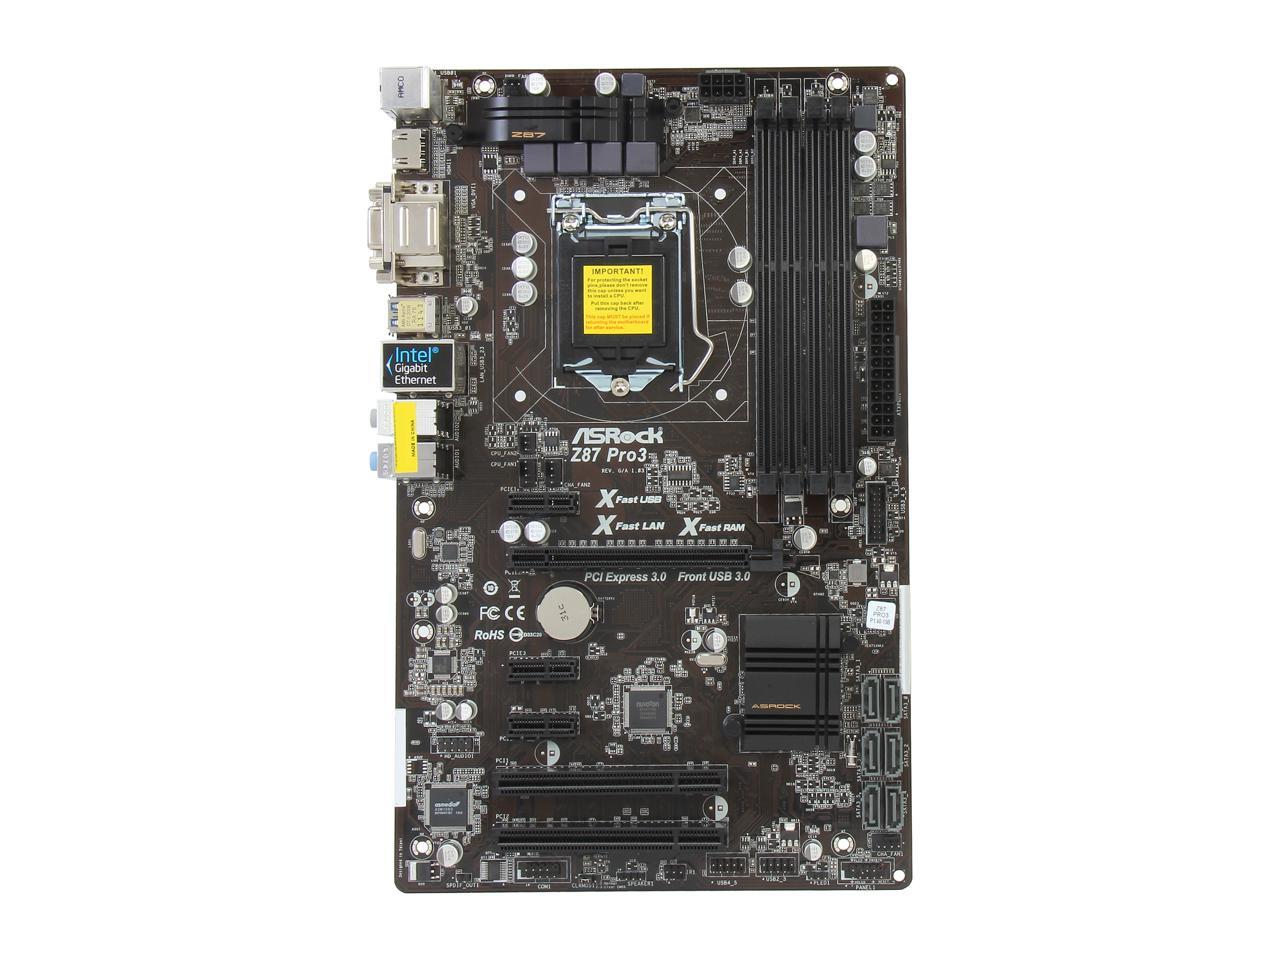 ASRock Z87 PRO3 LGA 1150 Intel Z87 HDMI SATA 6Gb/s USB 3.0 ATX Intel Motherboard